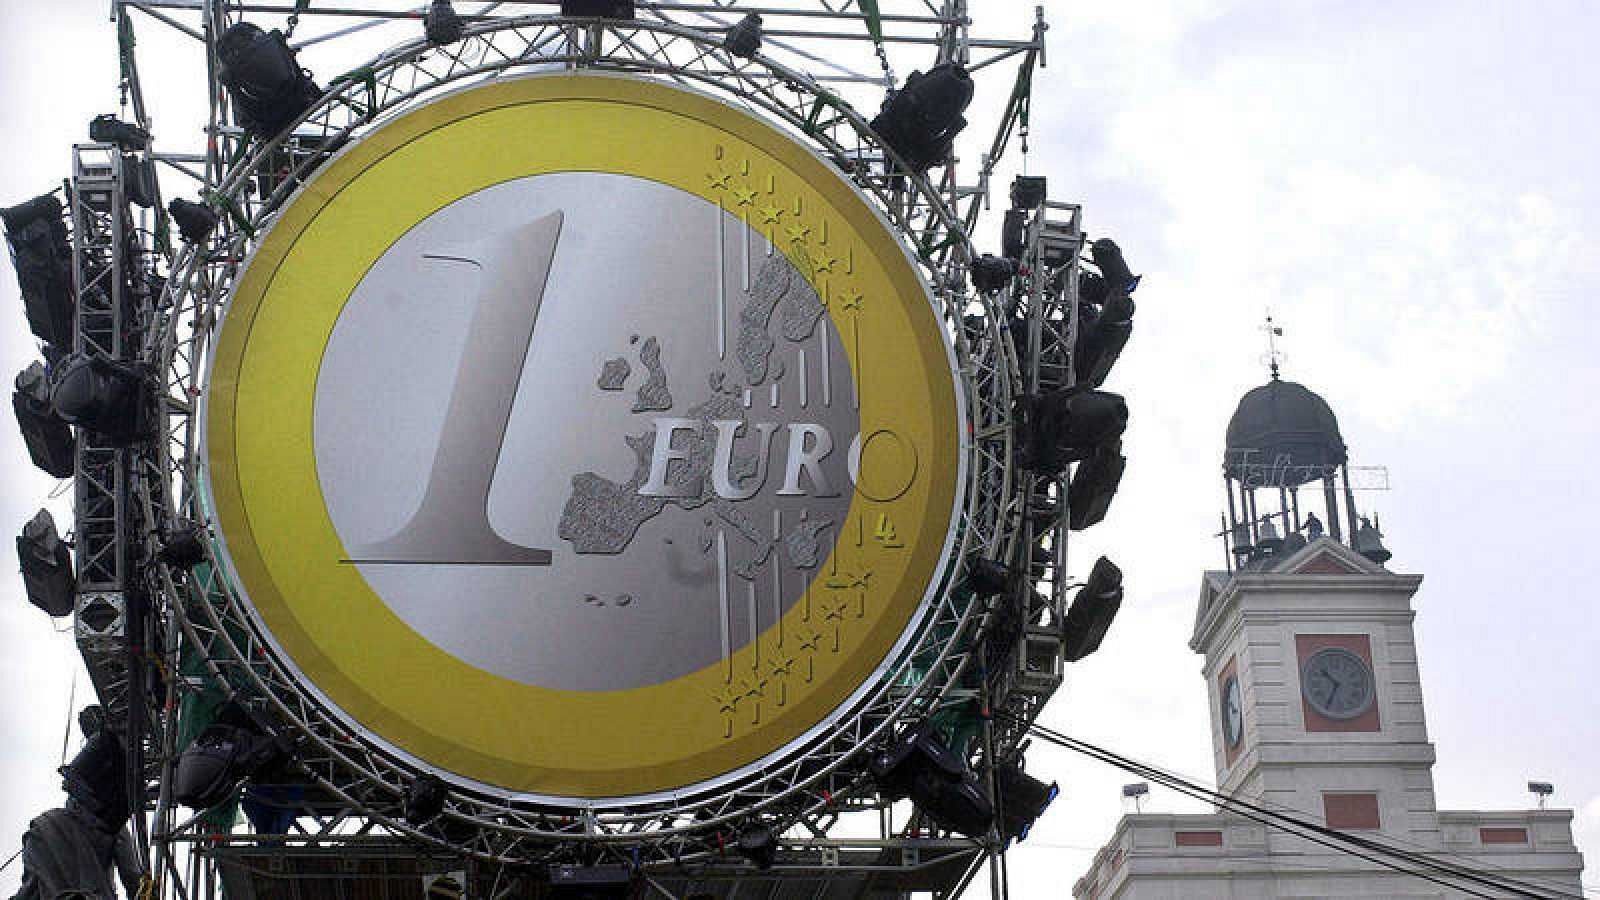 Entrada de españa en el euro